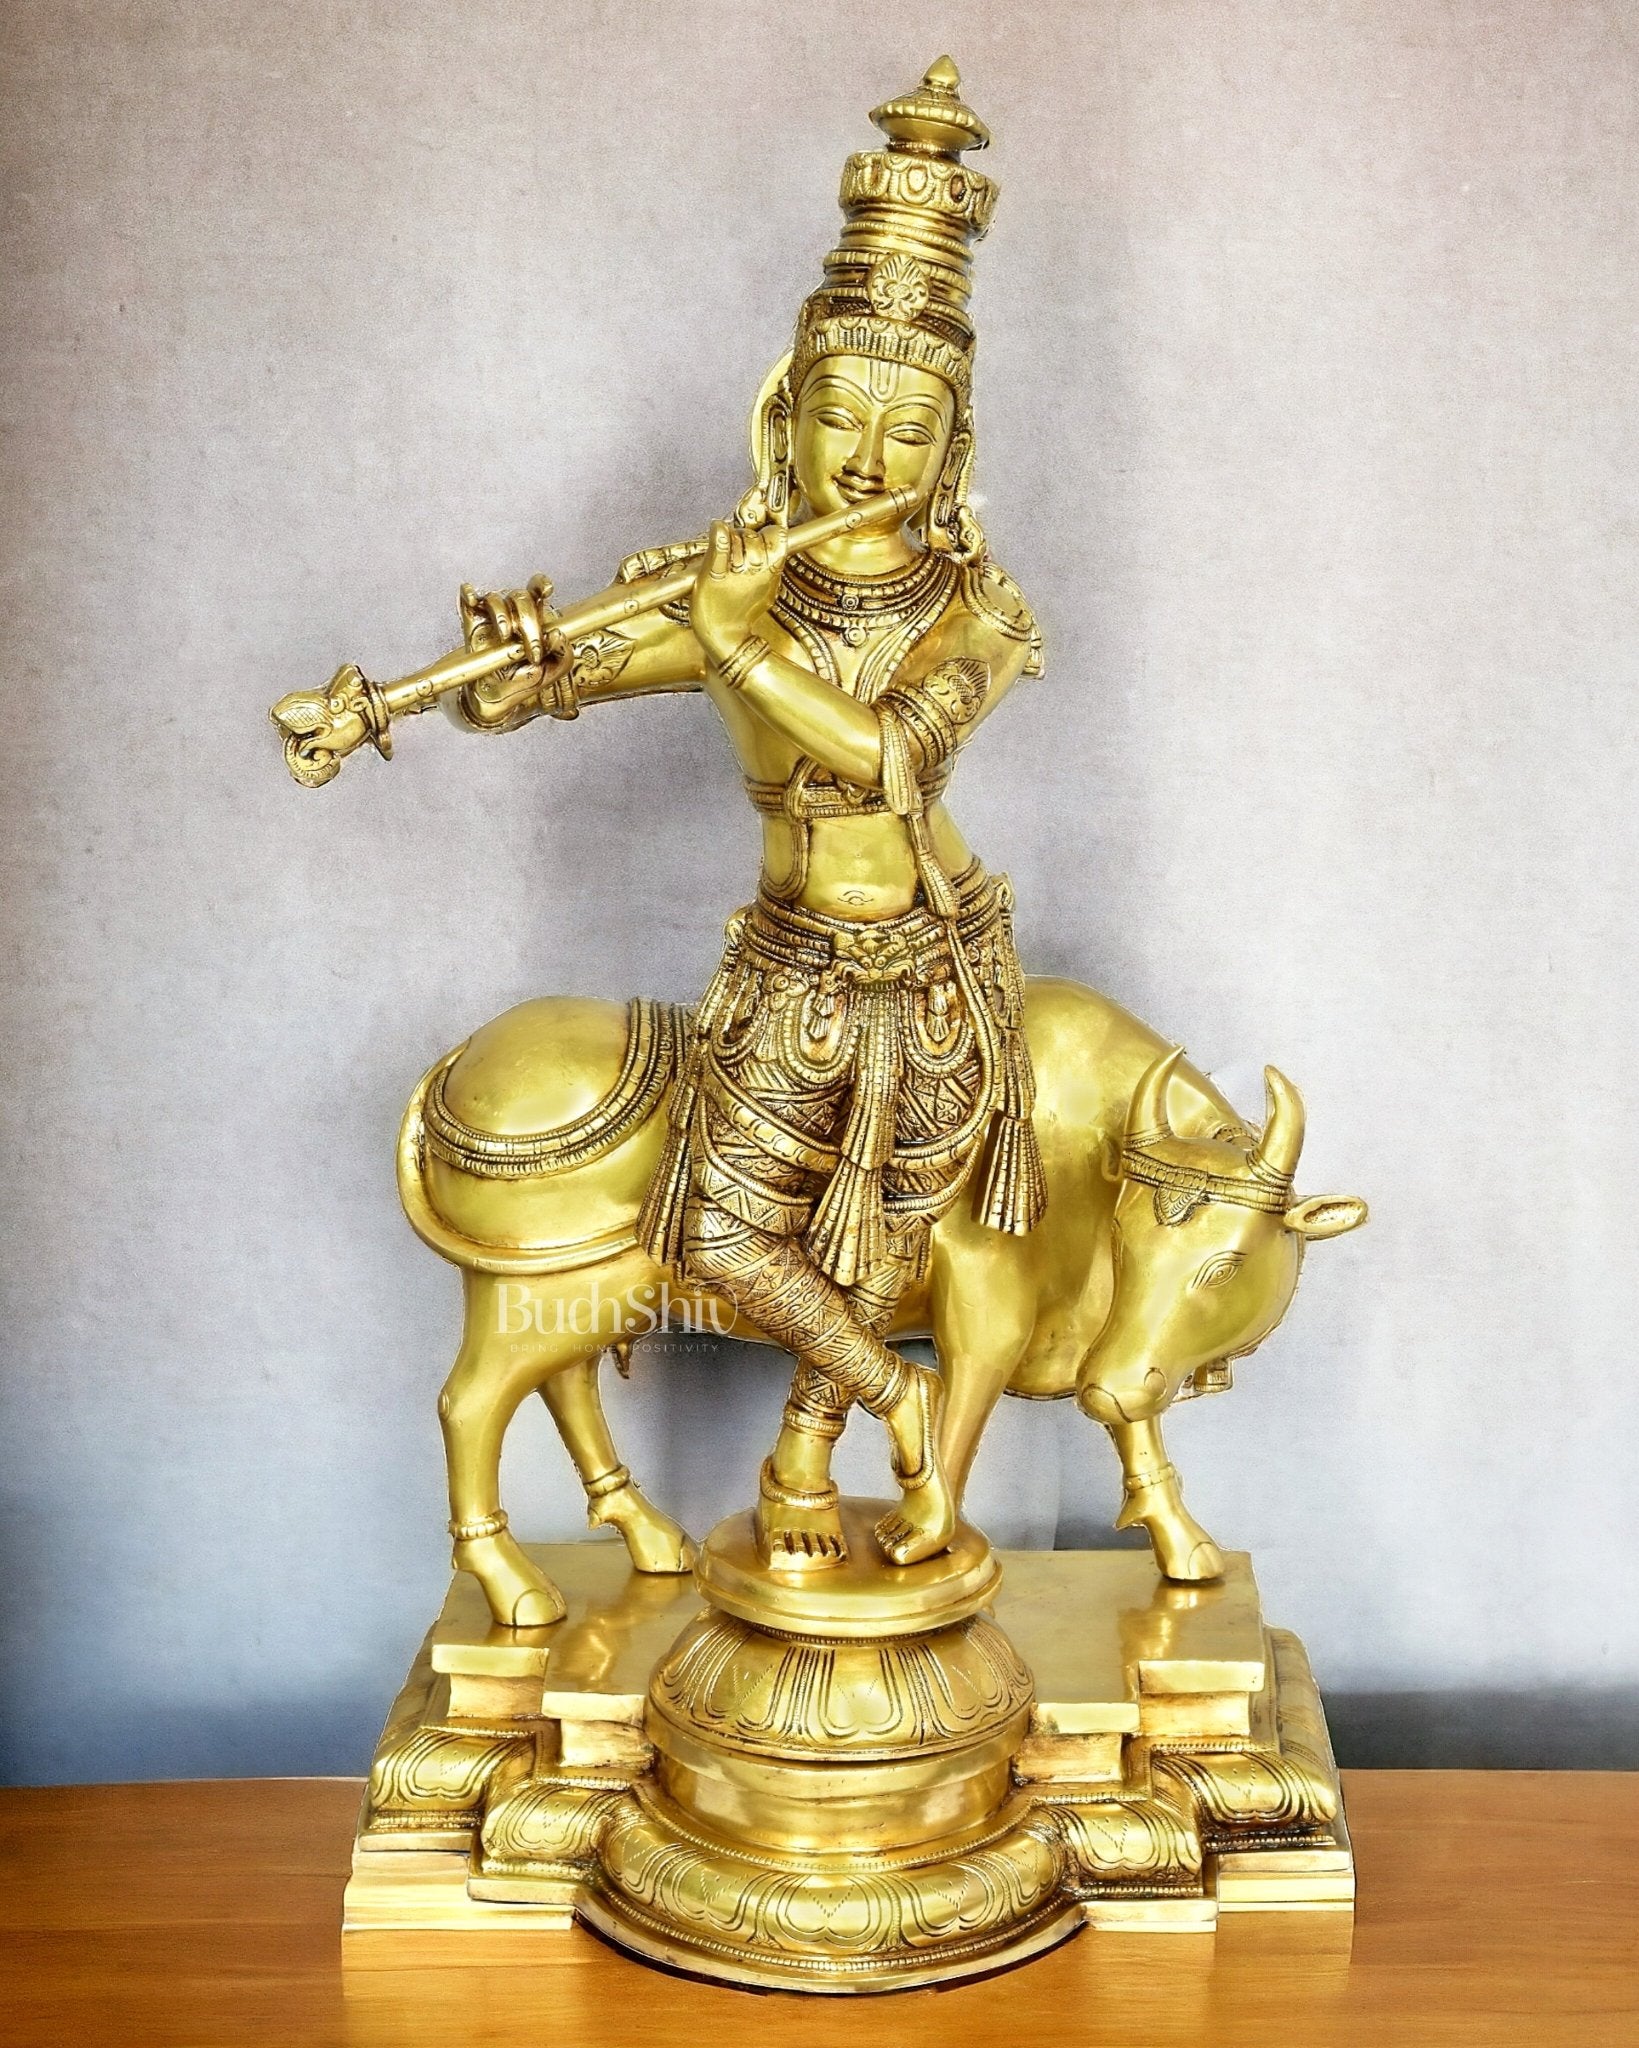 Krishna with cow Brass idol 26 inch - Budhshiv.com